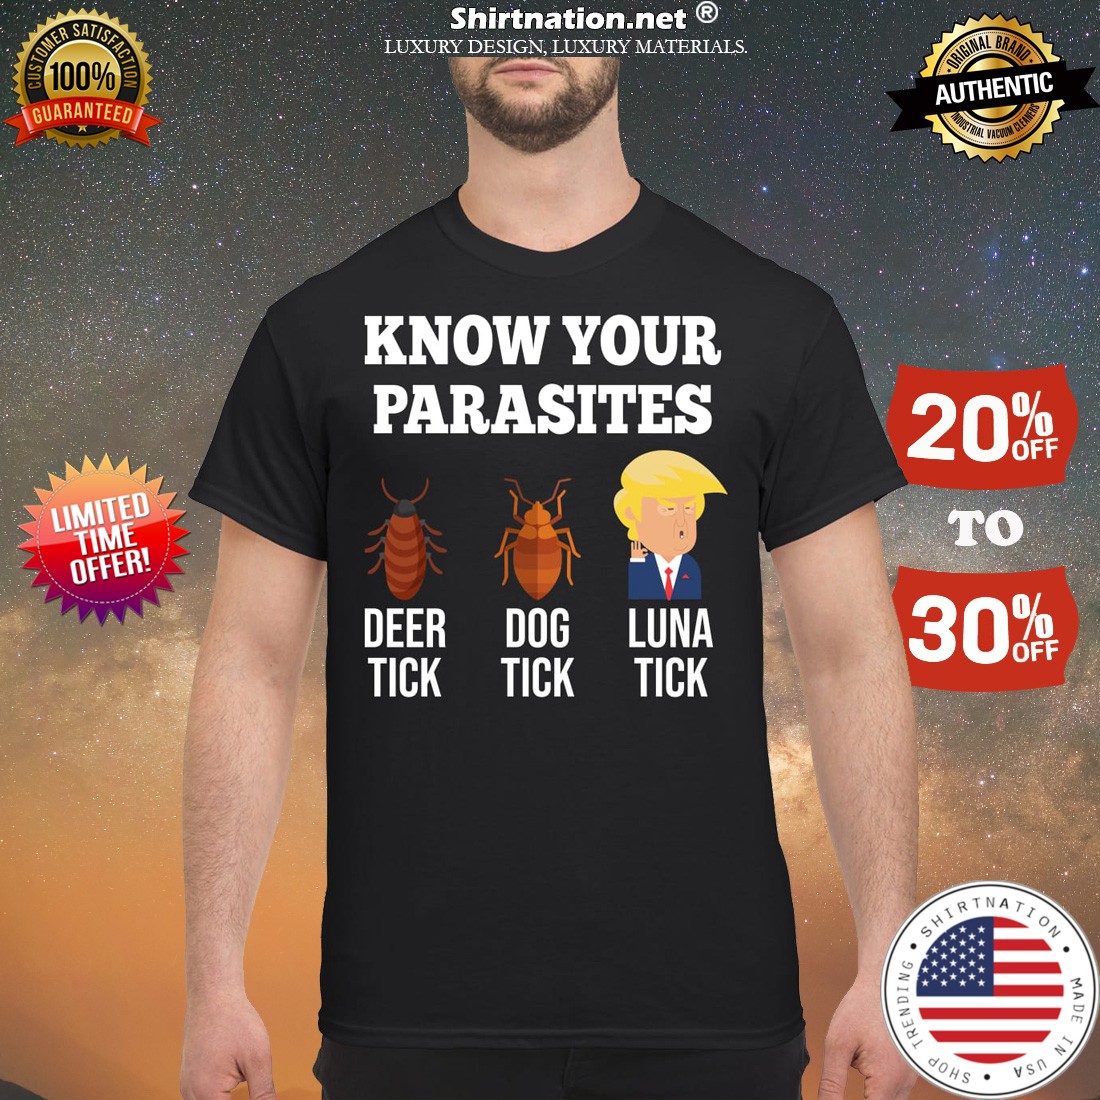 Know your parasites deer tick dog tick luna tick Trump shirt